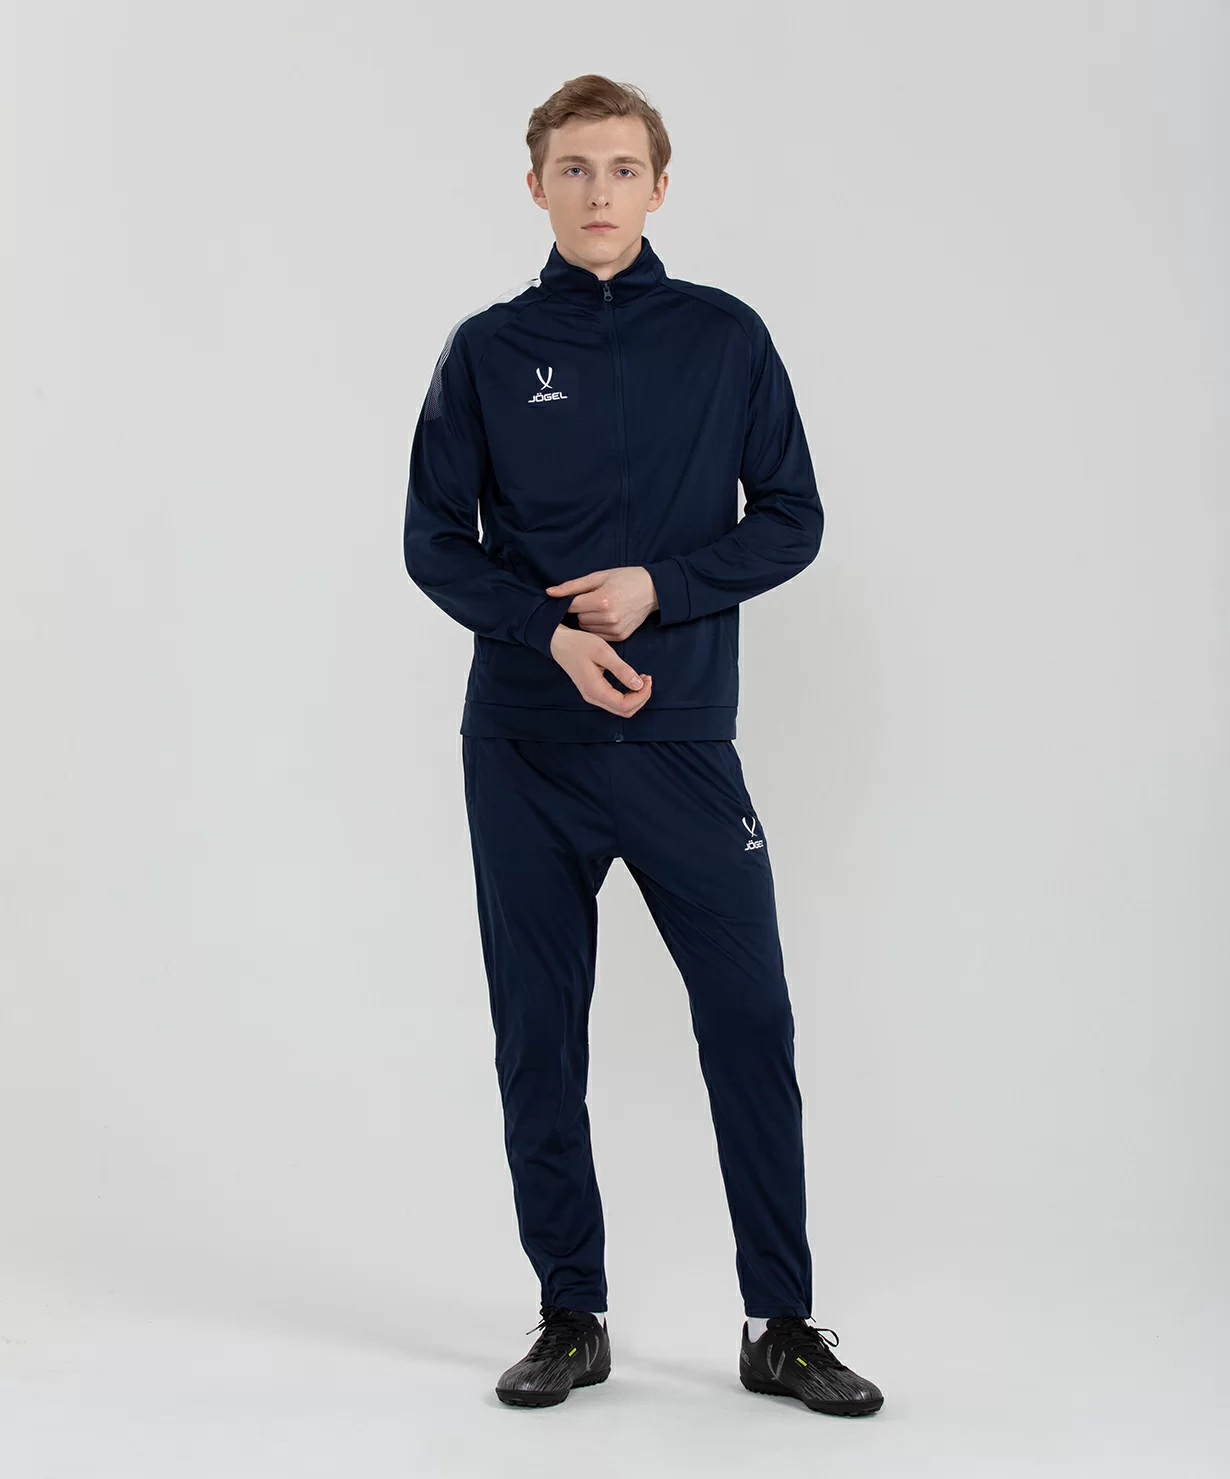 Фото Олимпийка CAMP Training Jacket FZ, темно-синий Jögel со склада магазина СпортЕВ